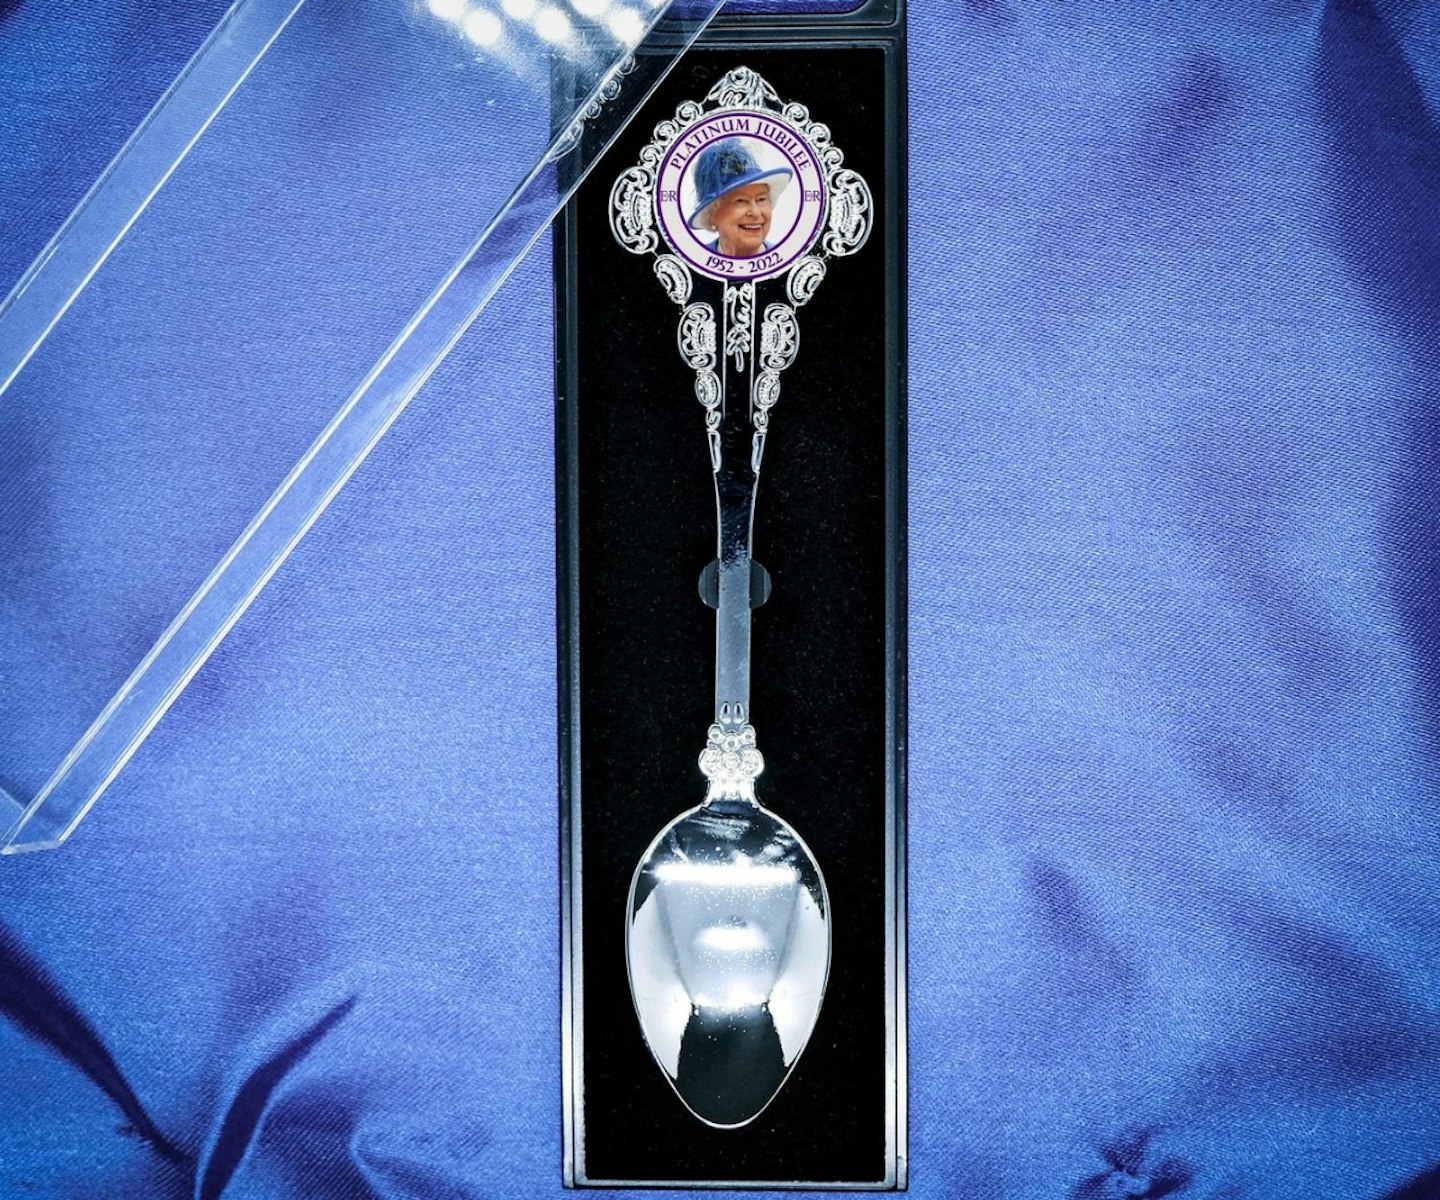 Queen's Platinum Jubilee 2022 Commemorative Spoon